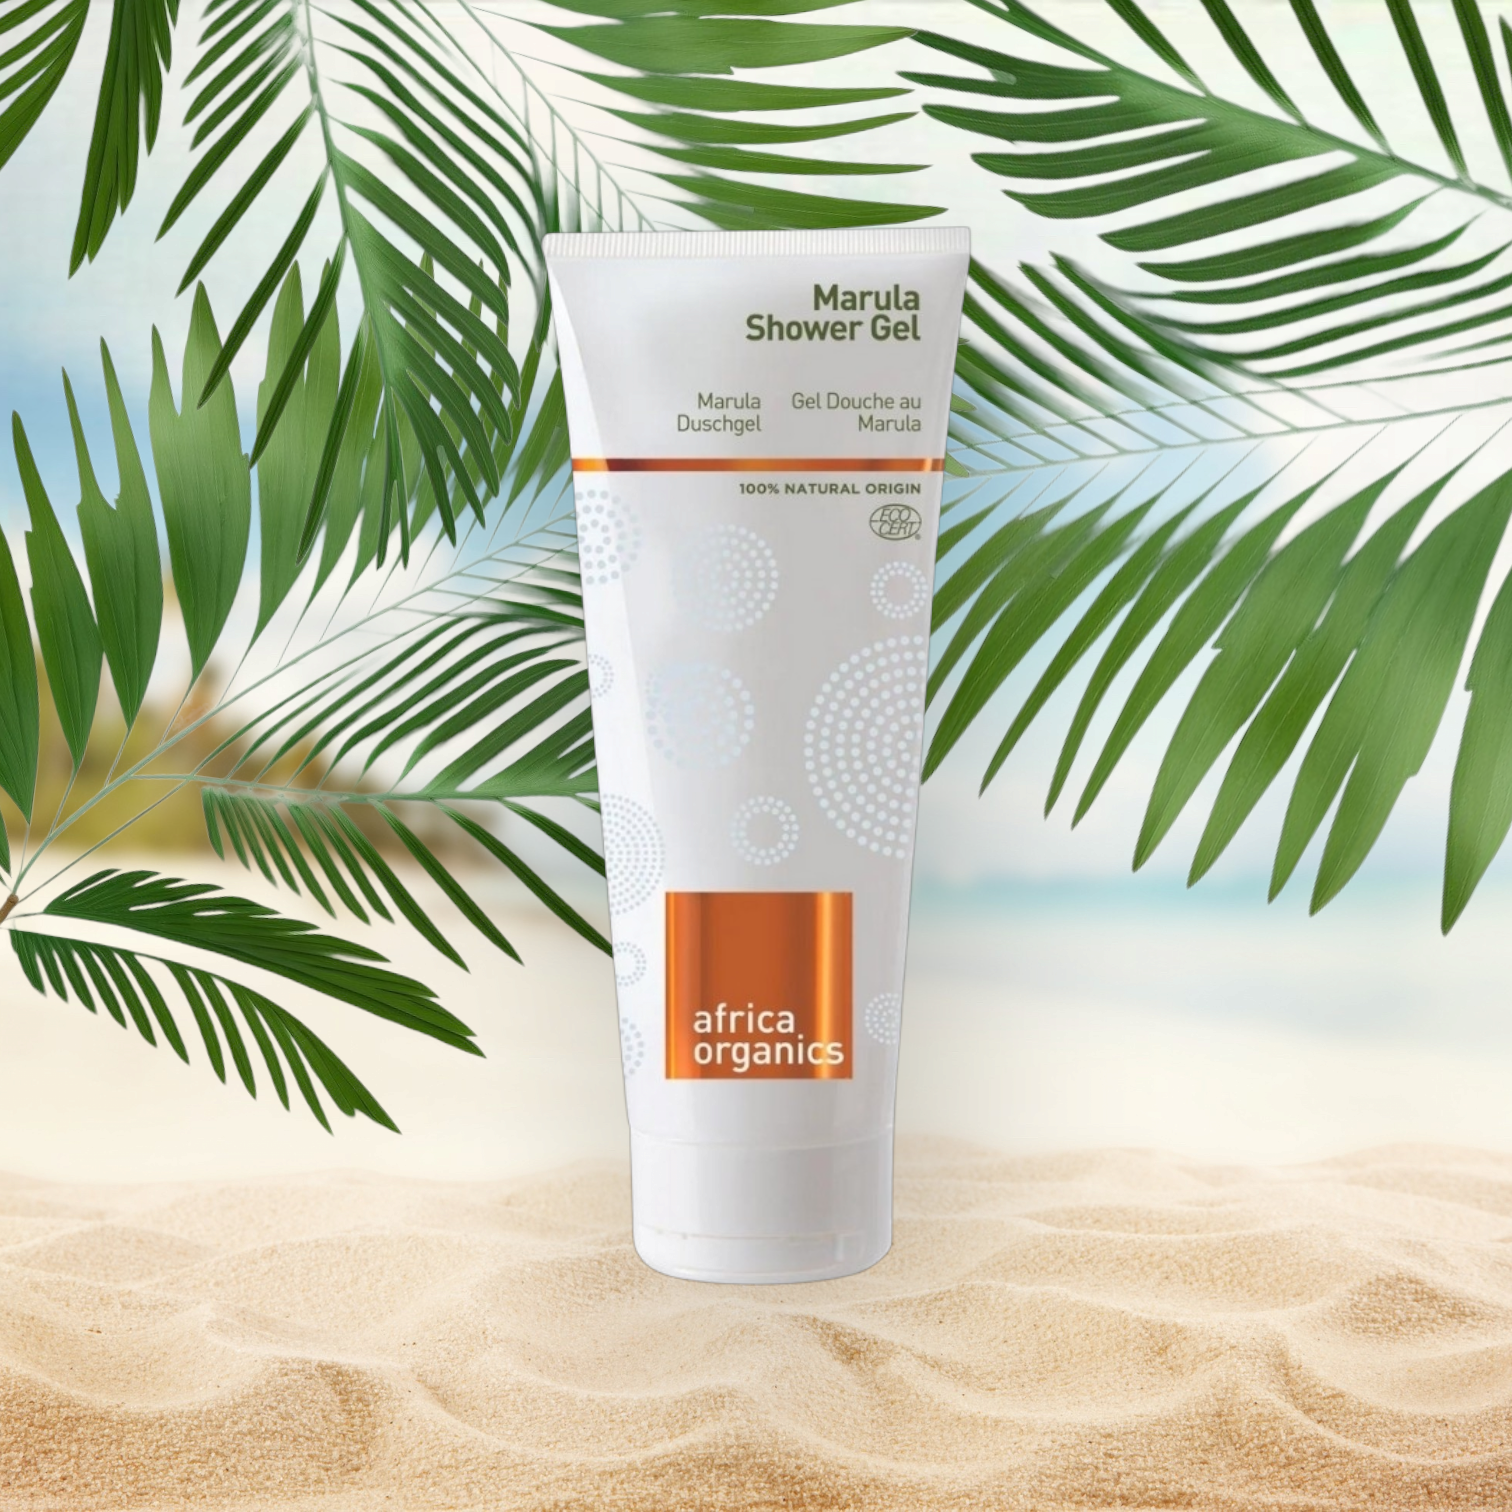 Pureday En tube Africa Organics Marula shower gel 210ml, med naturlige ingredienser, placeret på en sandstrand baggrund med tropiske palmeblade, der ligger lidt over toppen.